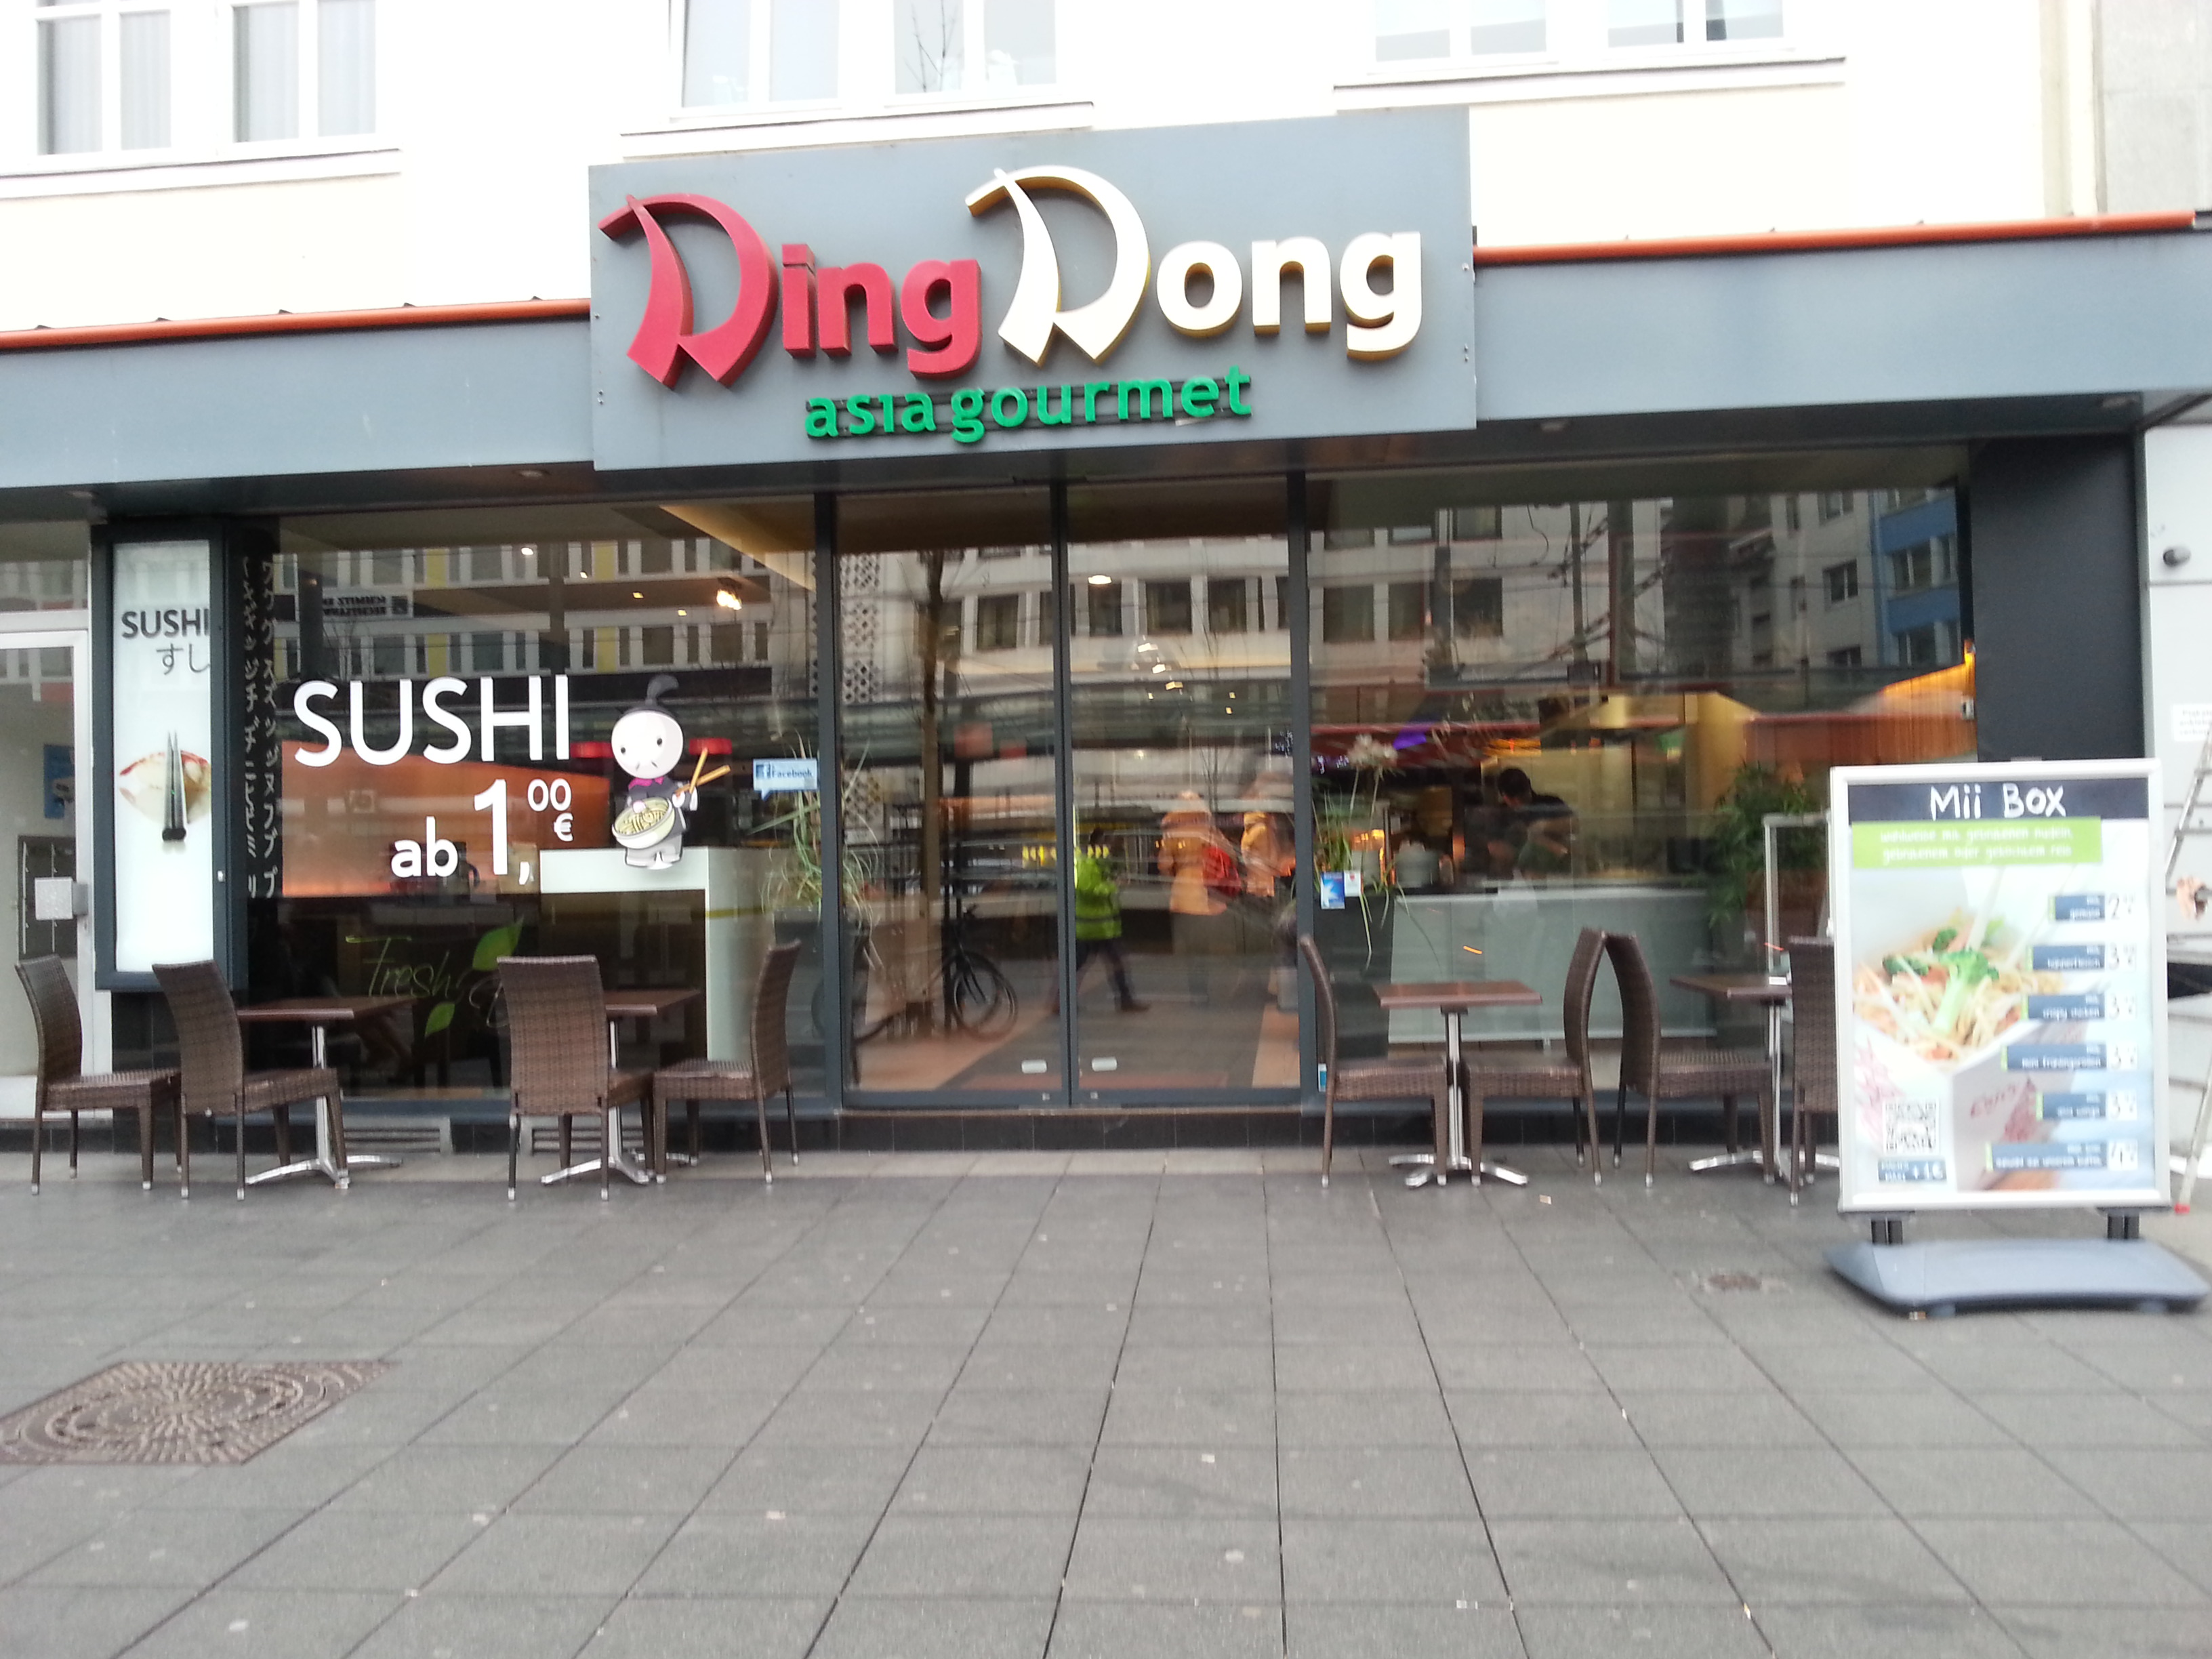 Ding Dong (geschlossen) | Bonn geht essen